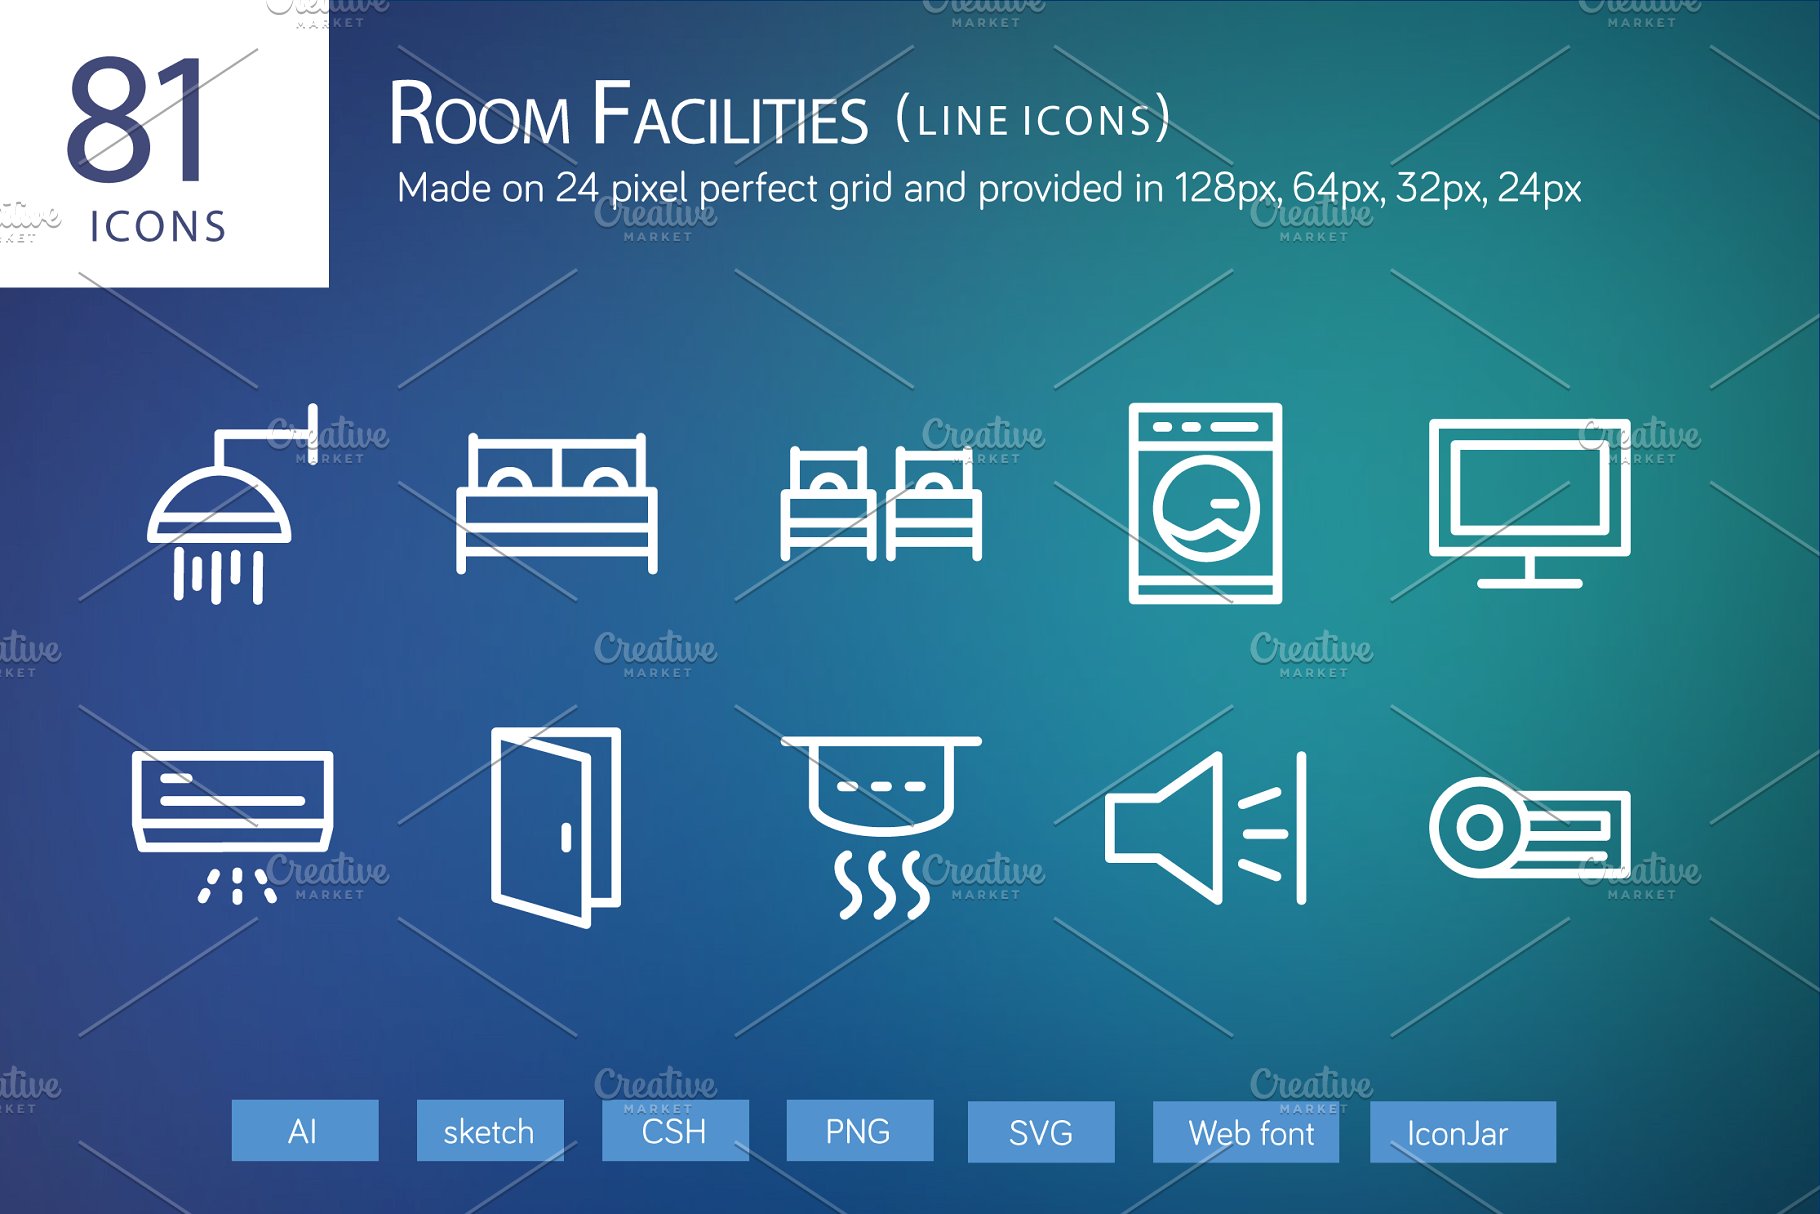 81个房屋电器家居物品矢量线条图标  81 Room Facilities Line Icons插图